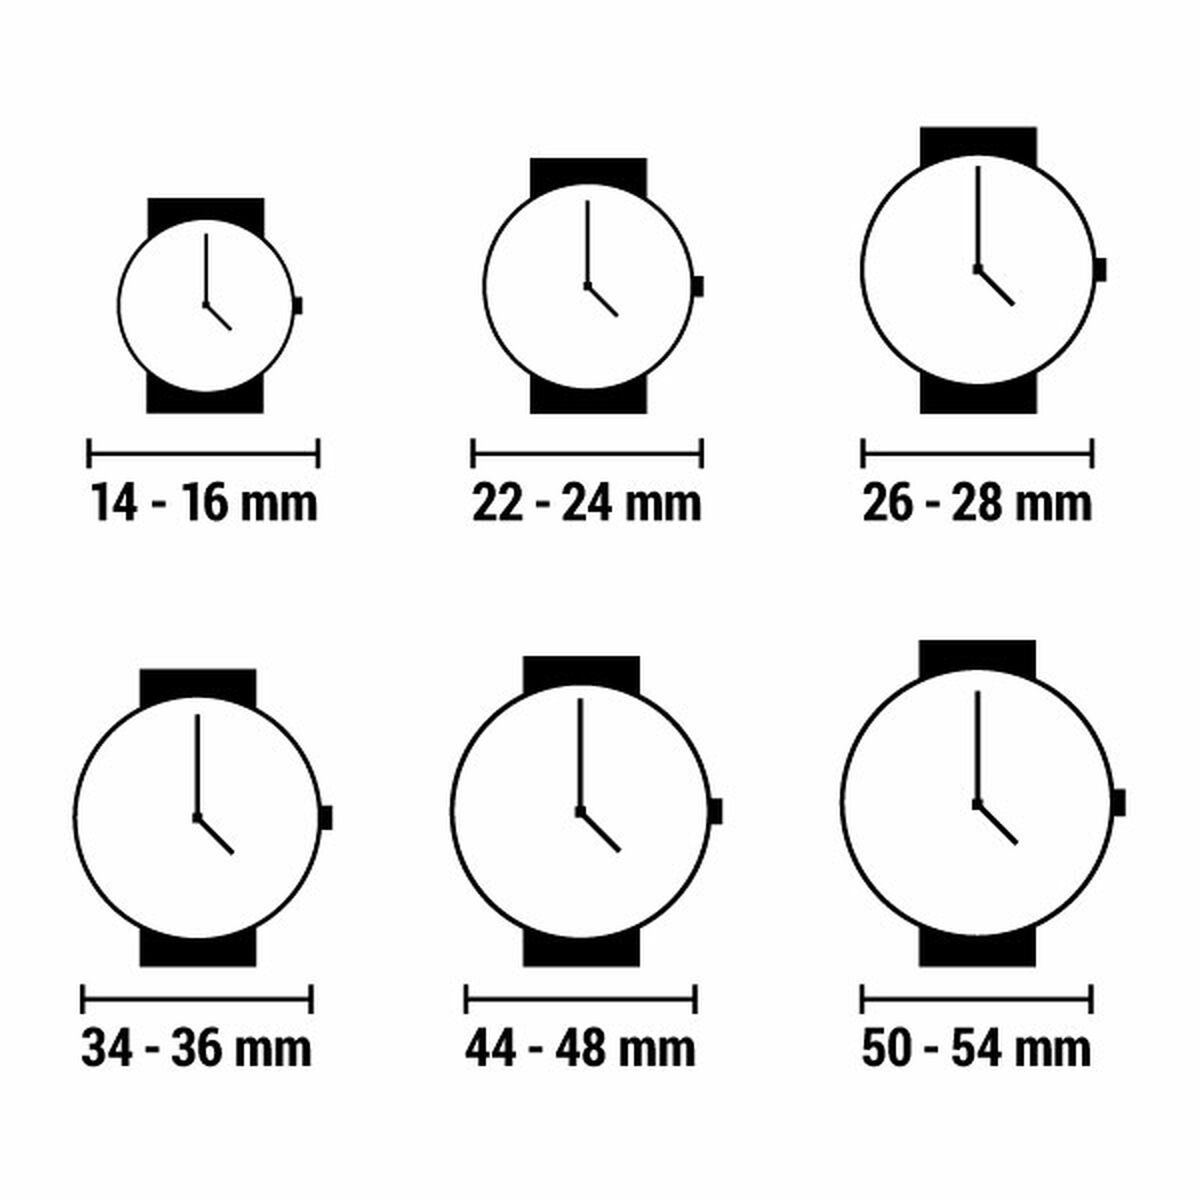 Horloge Dames Guess GW0034L1 (Ø 36 mm)